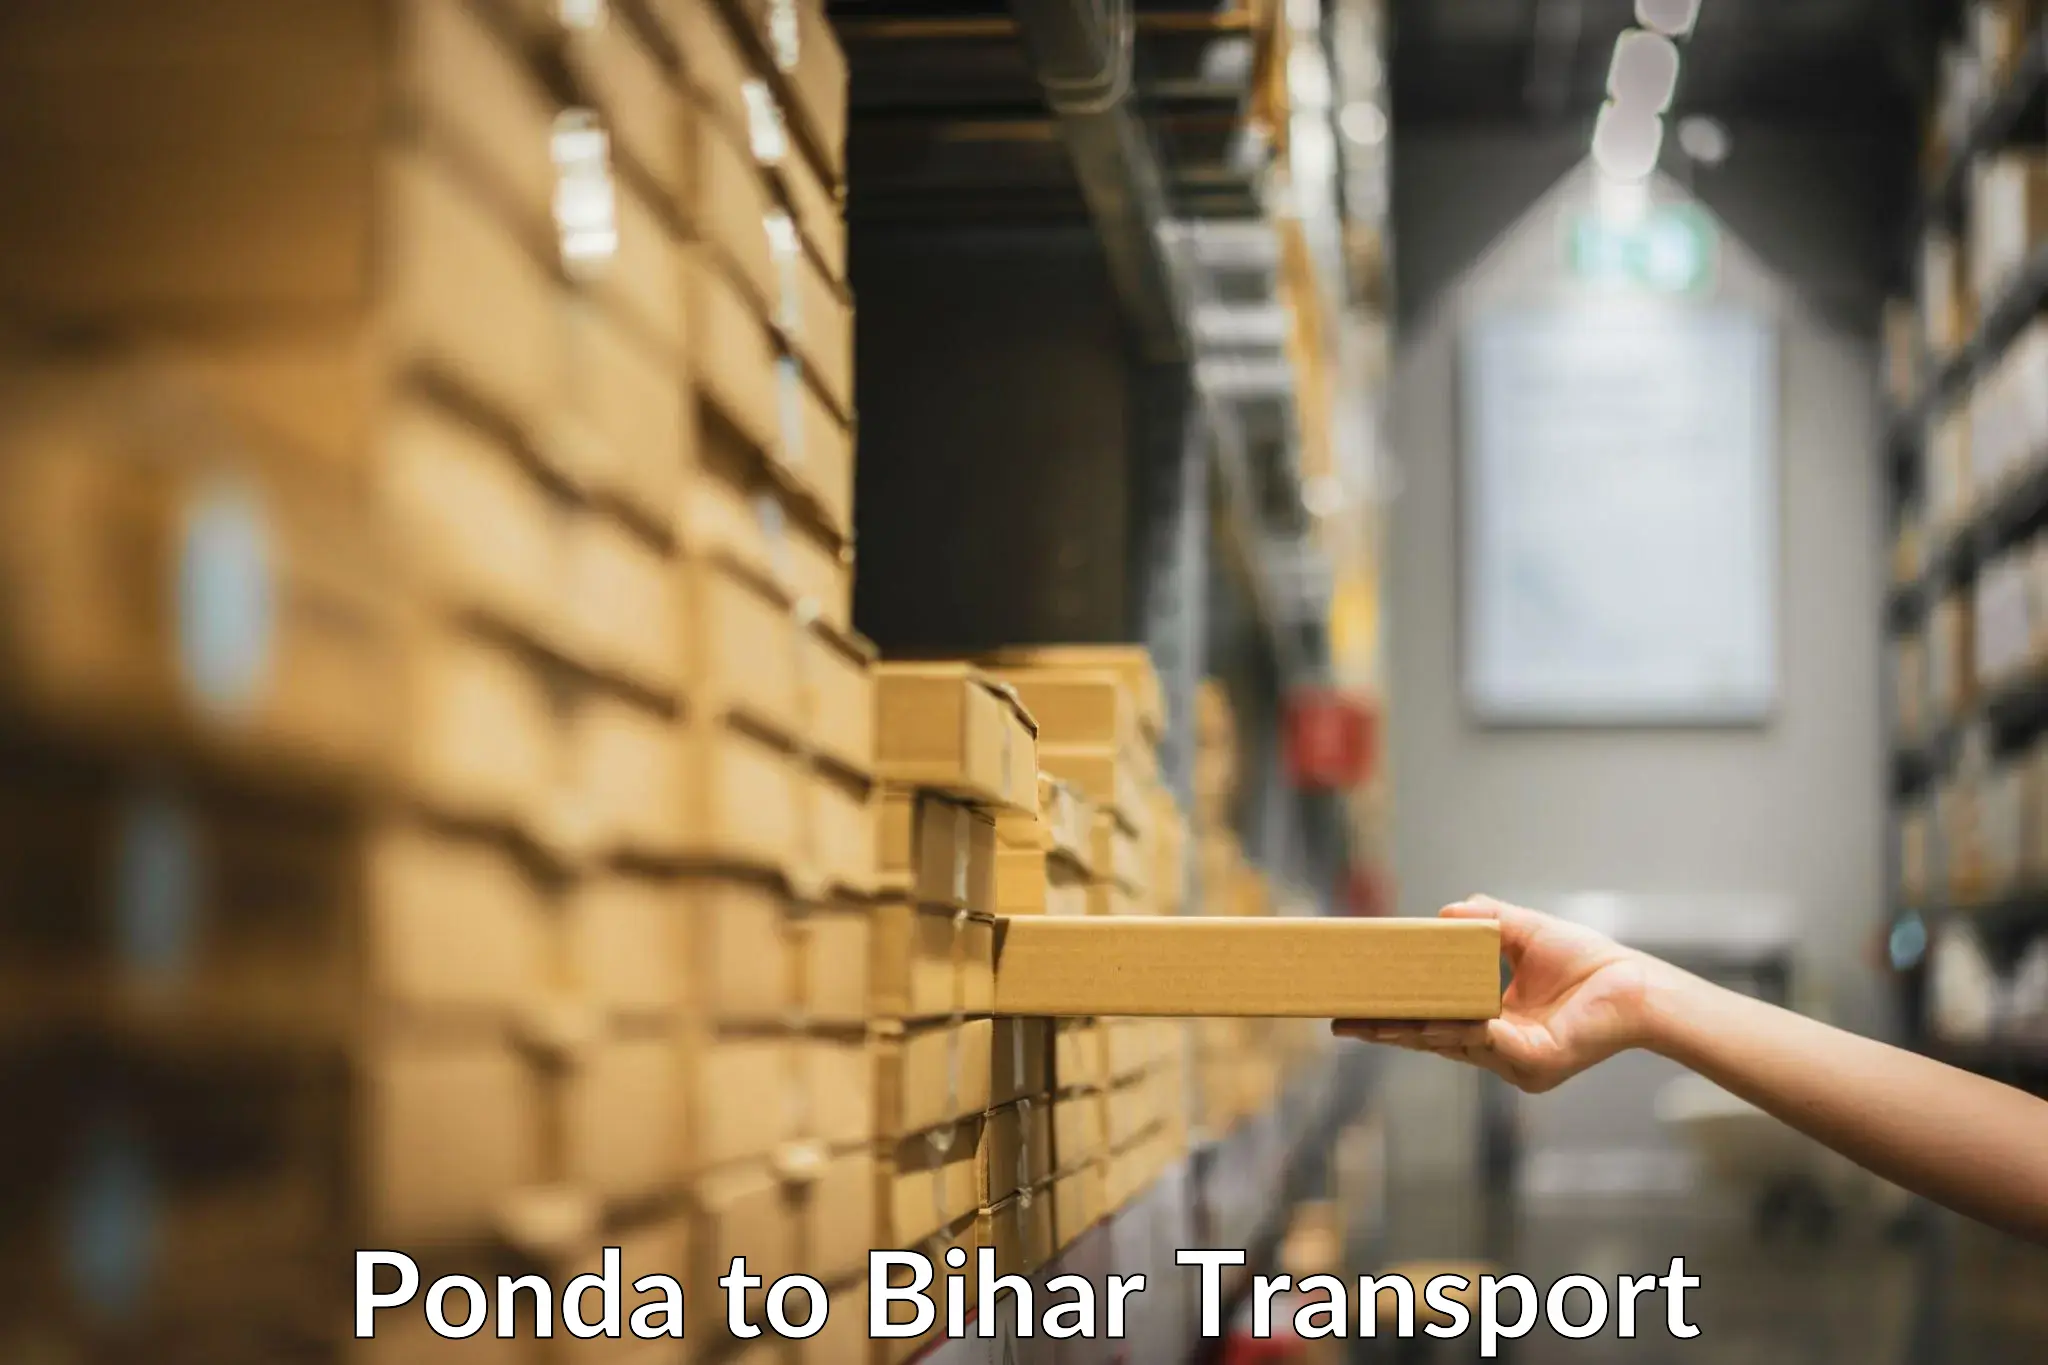 Furniture transport service Ponda to Sangrampur